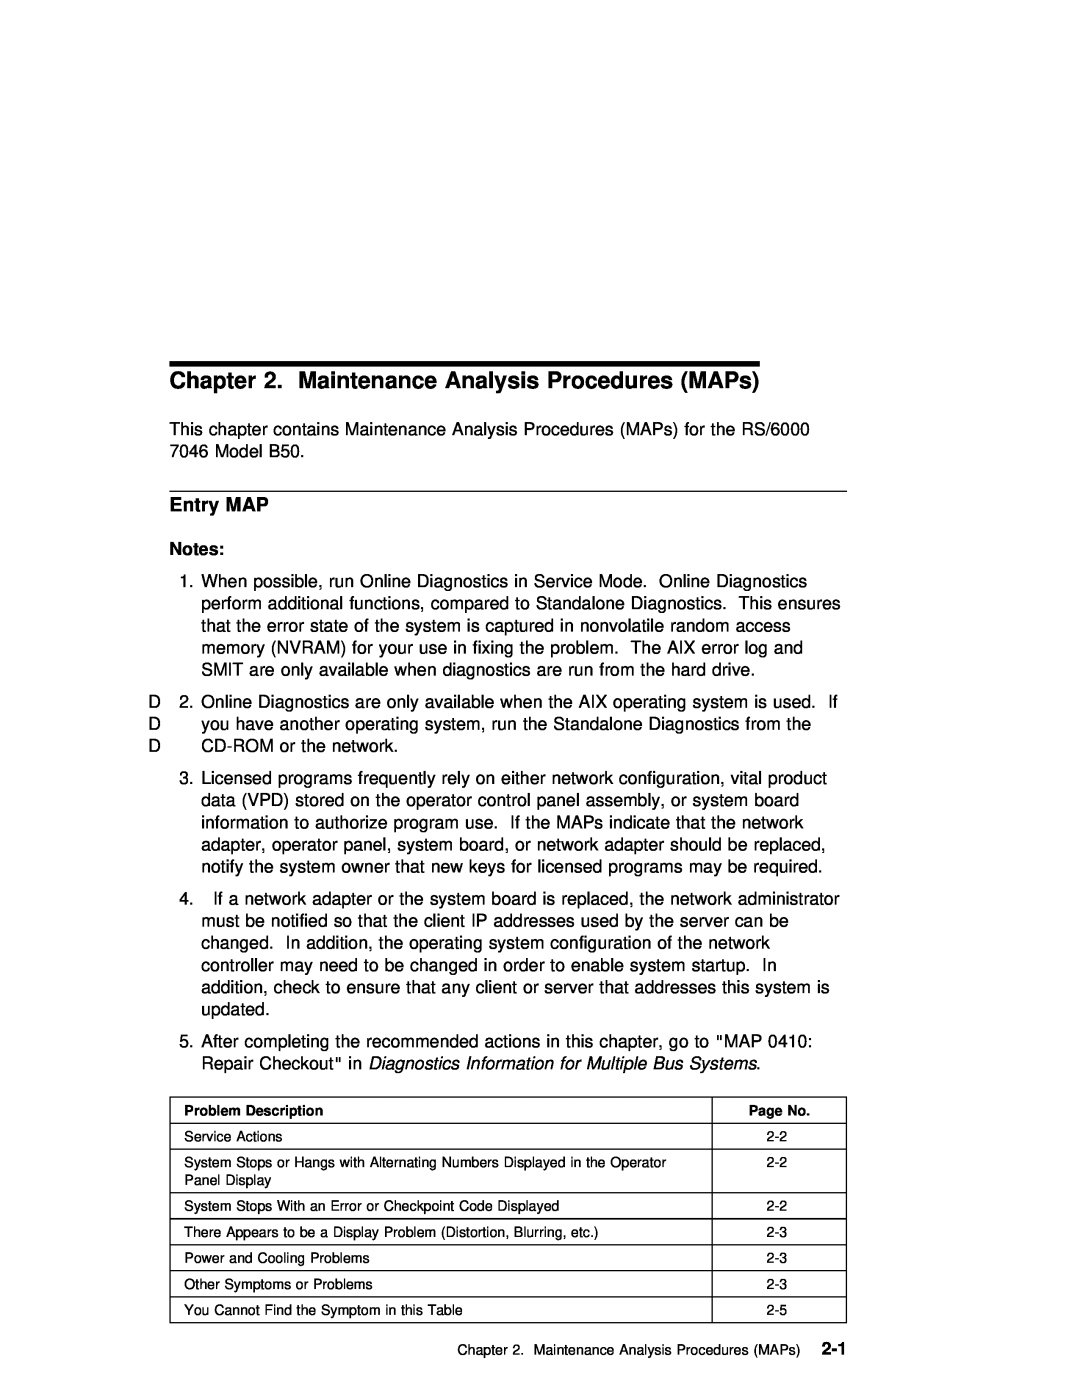 IBM B50 manual Maintenance Analysis Procedures MAPs, Entry MAP 